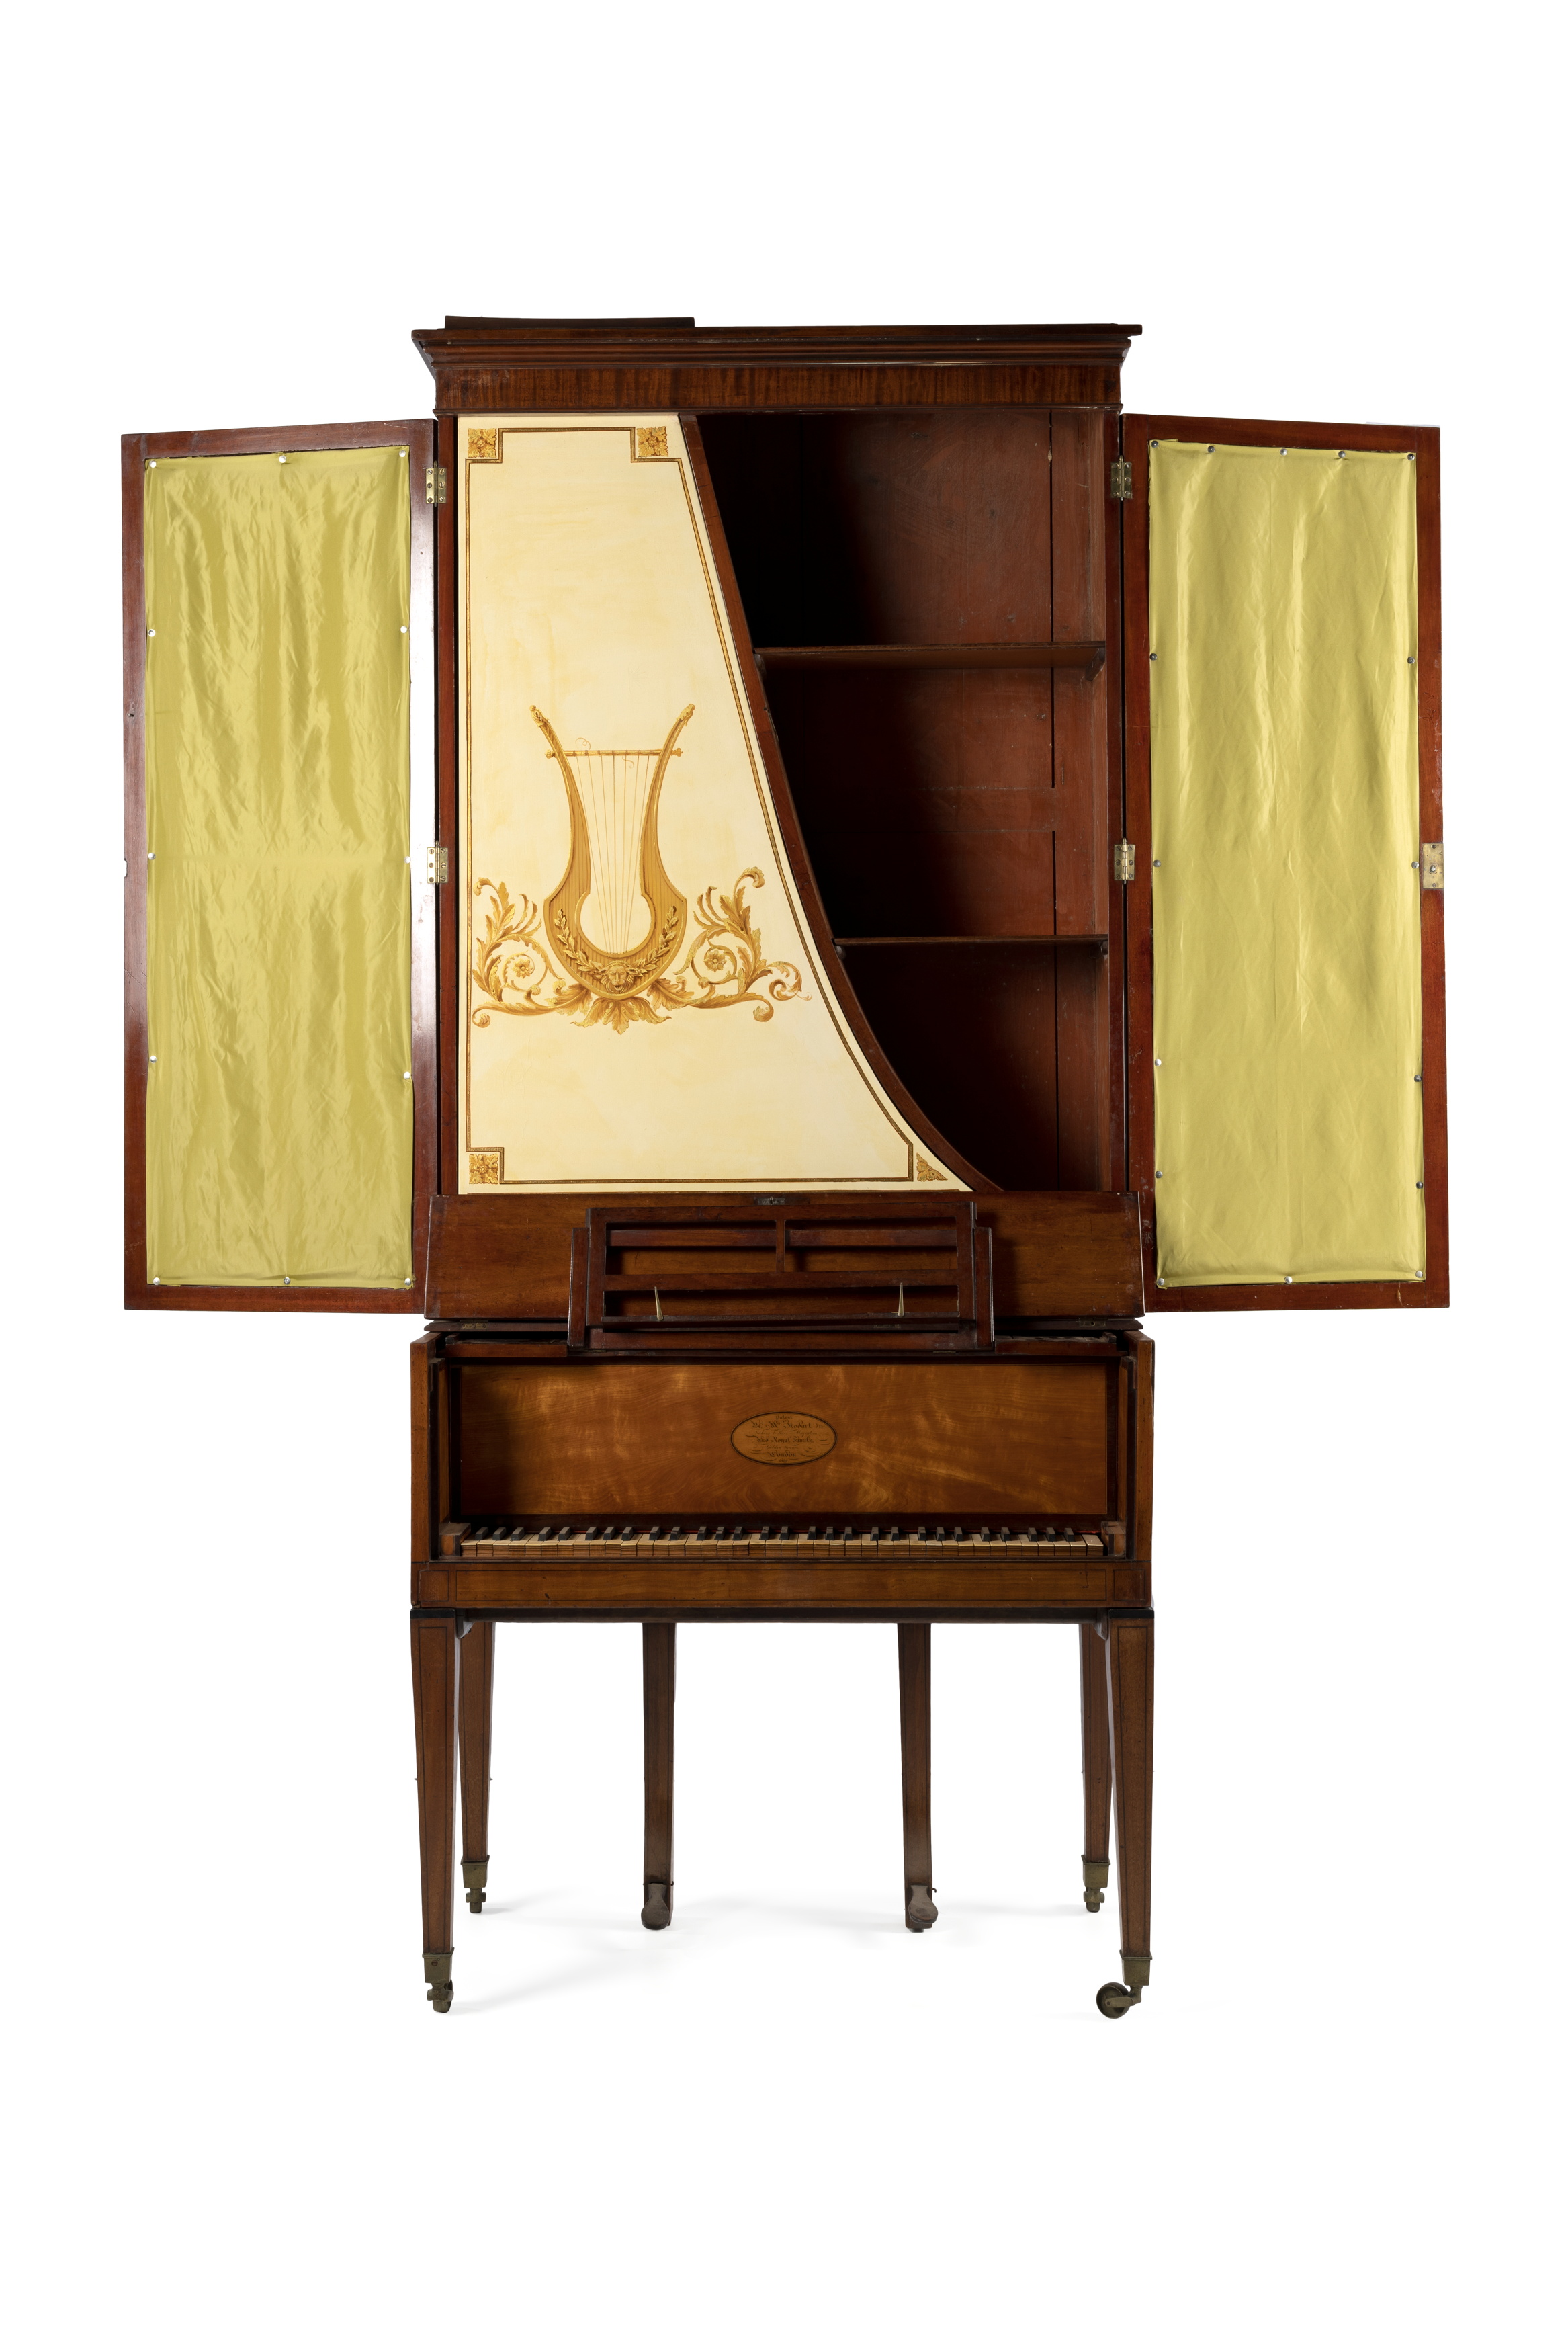 Upright grand piano by W & M Stodart